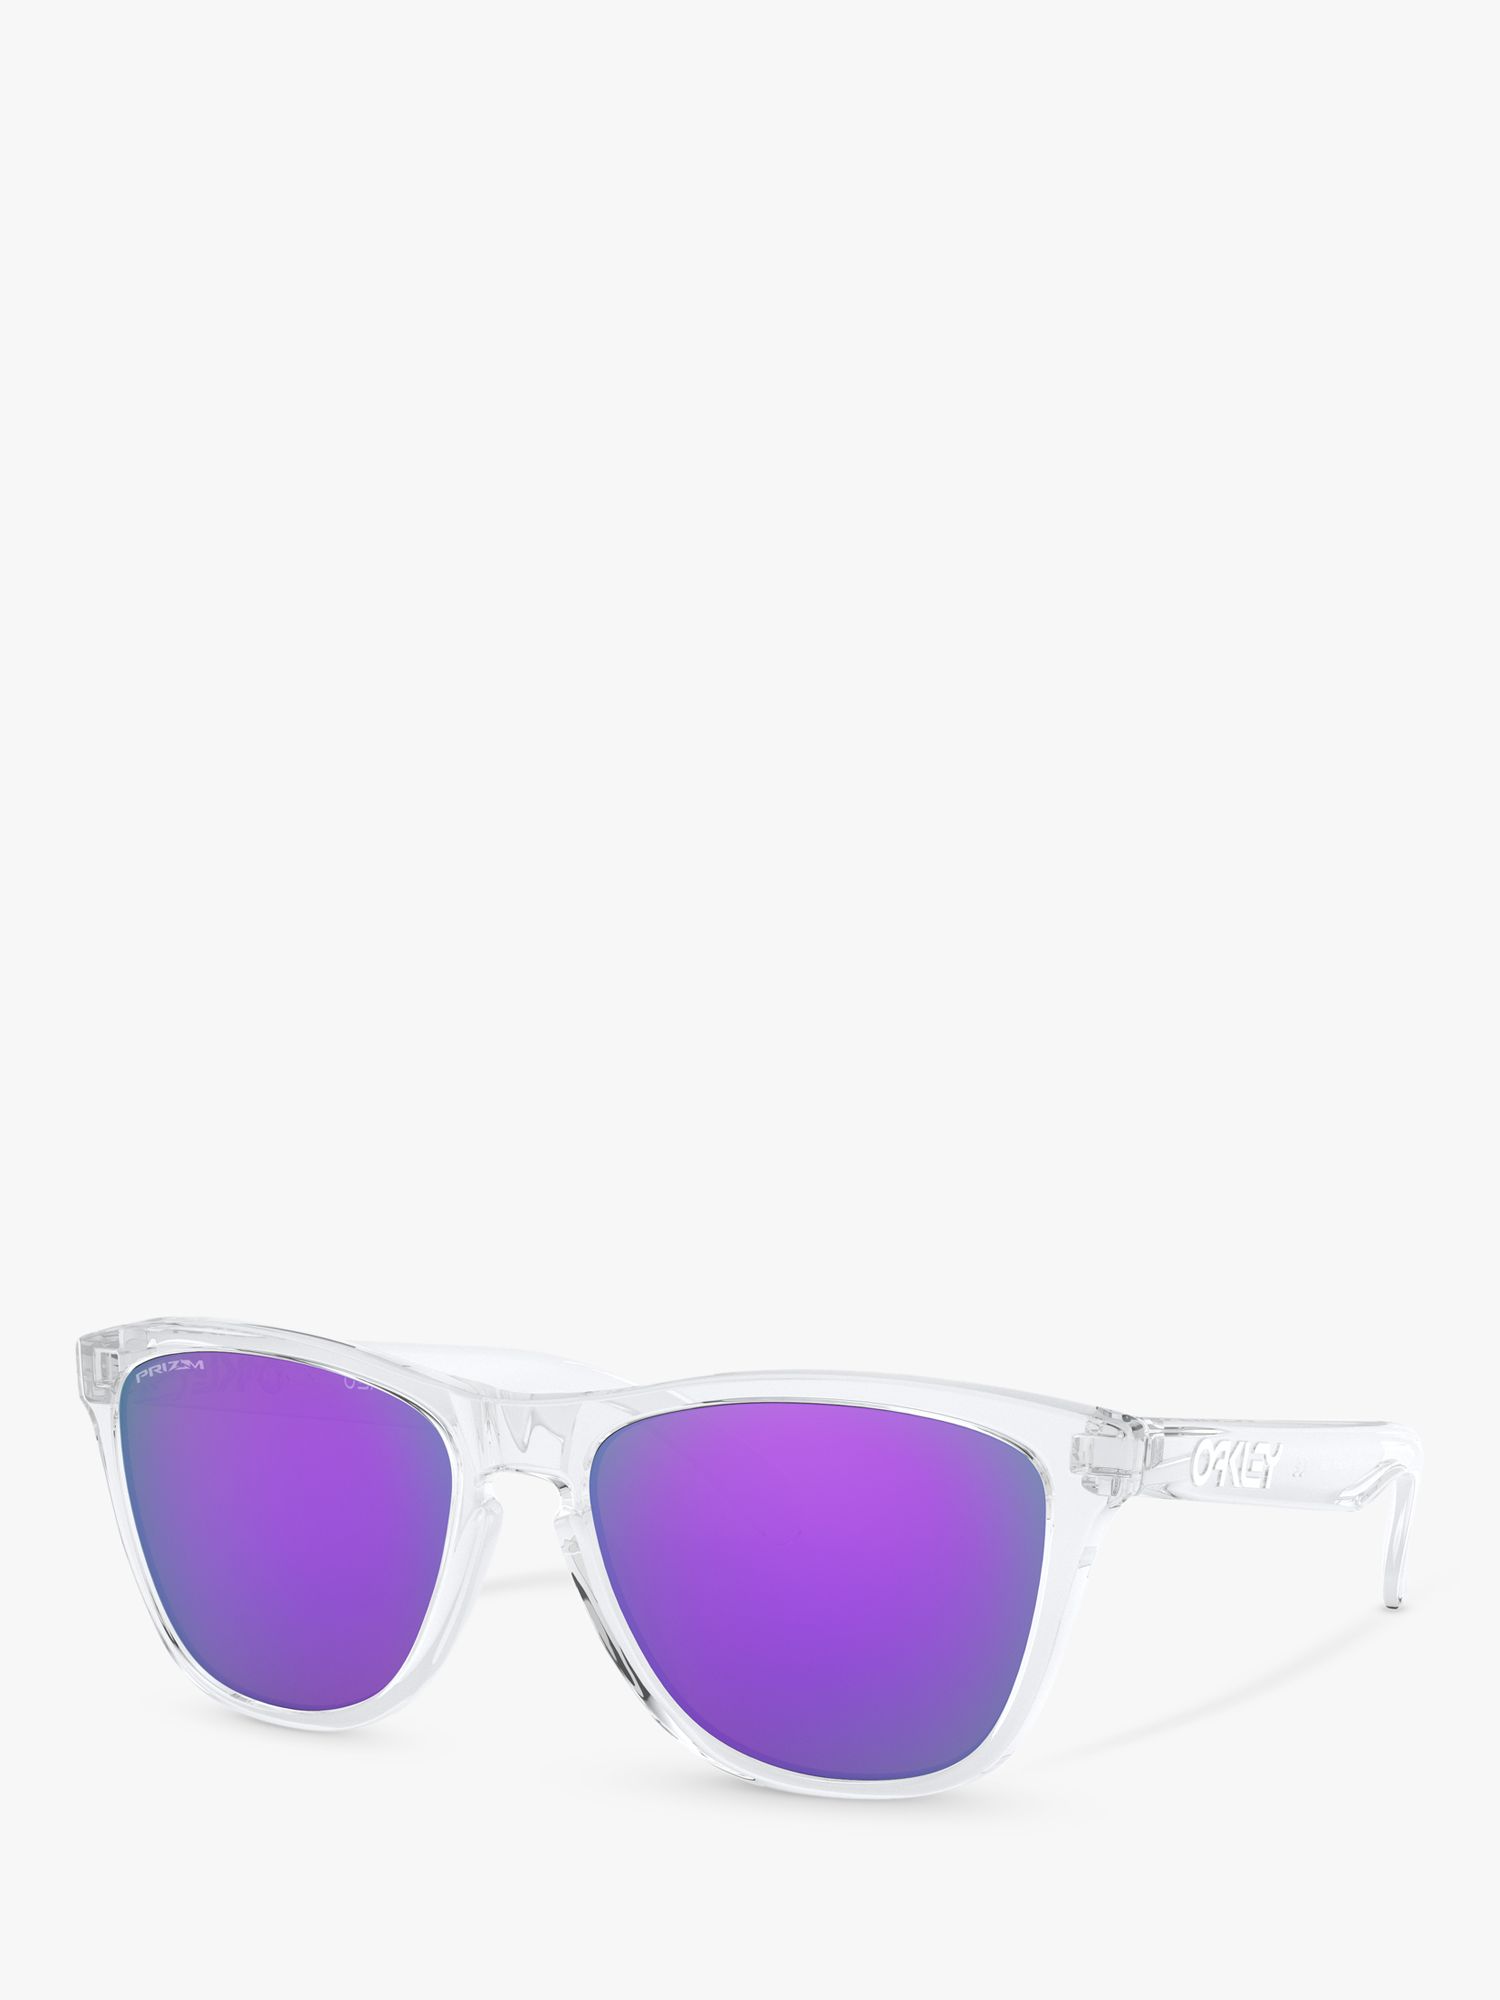 Мужские солнцезащитные очки Oakley OO9013 Frogskins Prizm Square, прозрачные/зеркально-фиолетовые